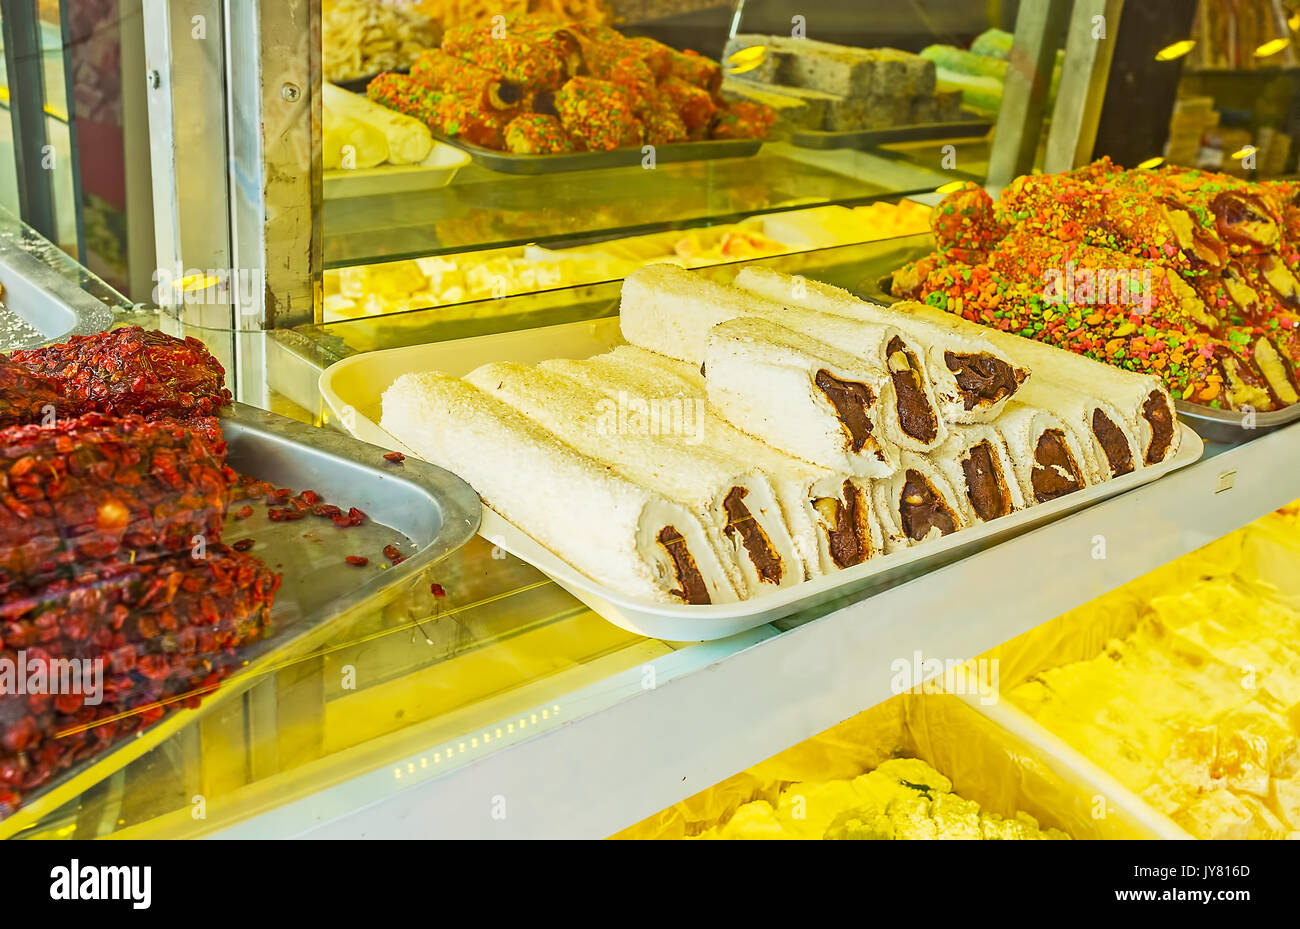 Turkish Delight auch bekannt als Rahat lokum ist traditionelle Süßwaren, aus natürlichen Zutaten und beliebt bei Besuchern der Mediterranen Reso Stockfoto